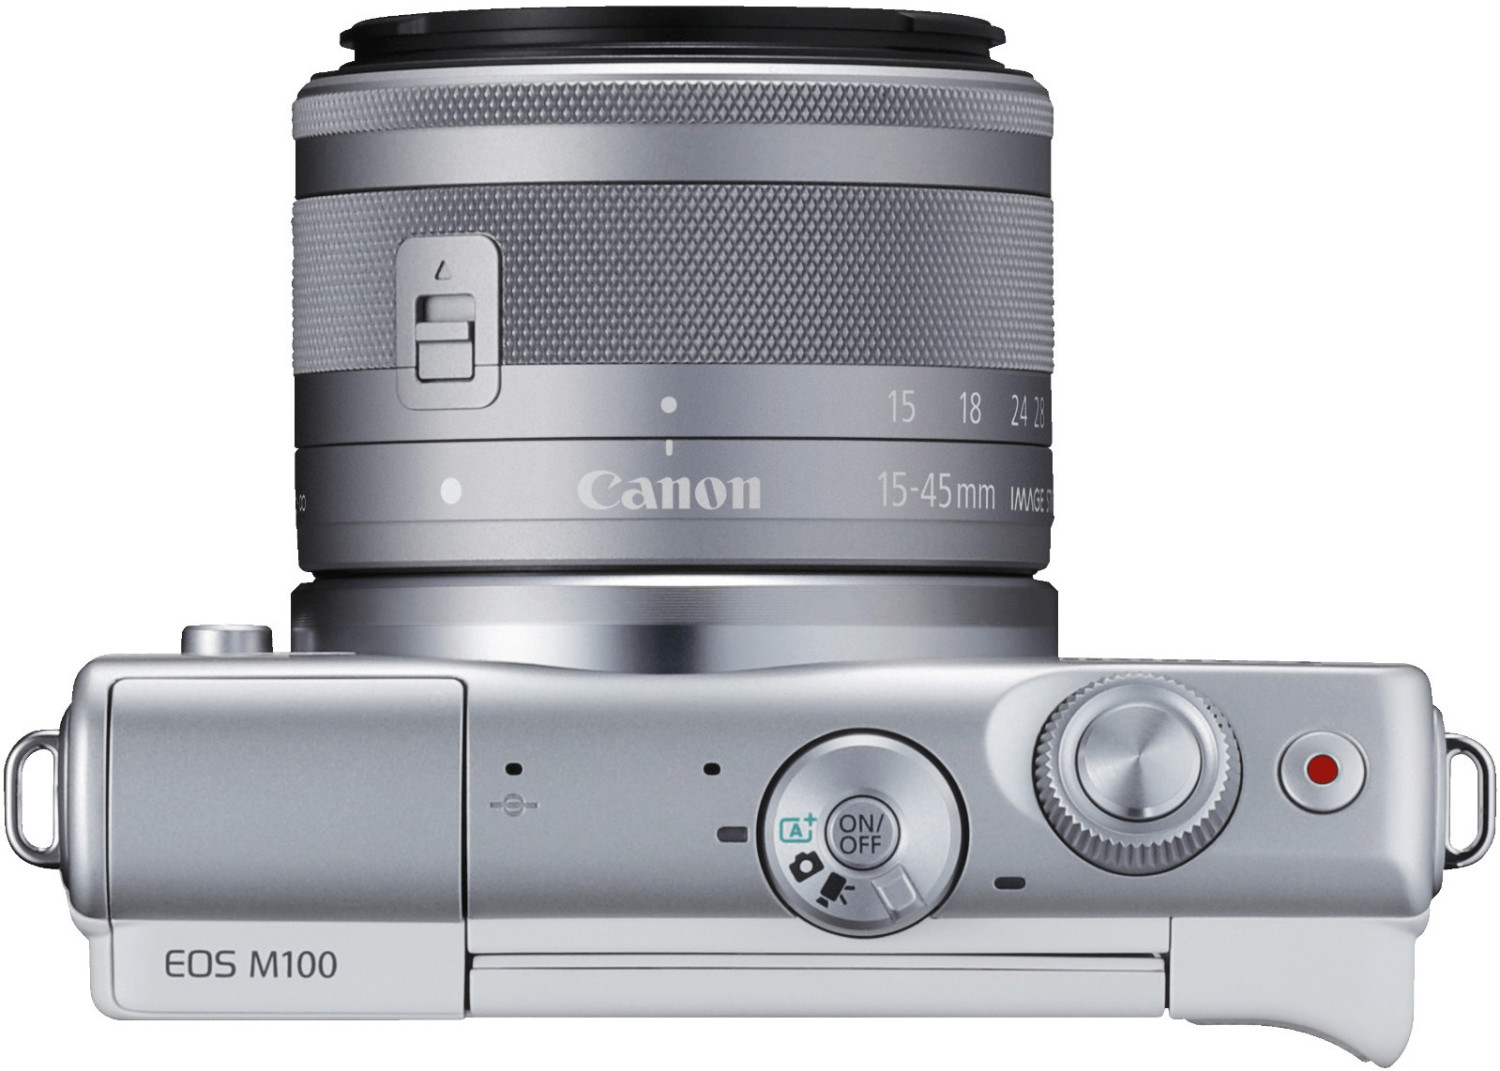 ProShop - Canon EOS M100 15-45mm - Weiß für nur 248,99€ inkl. Versand